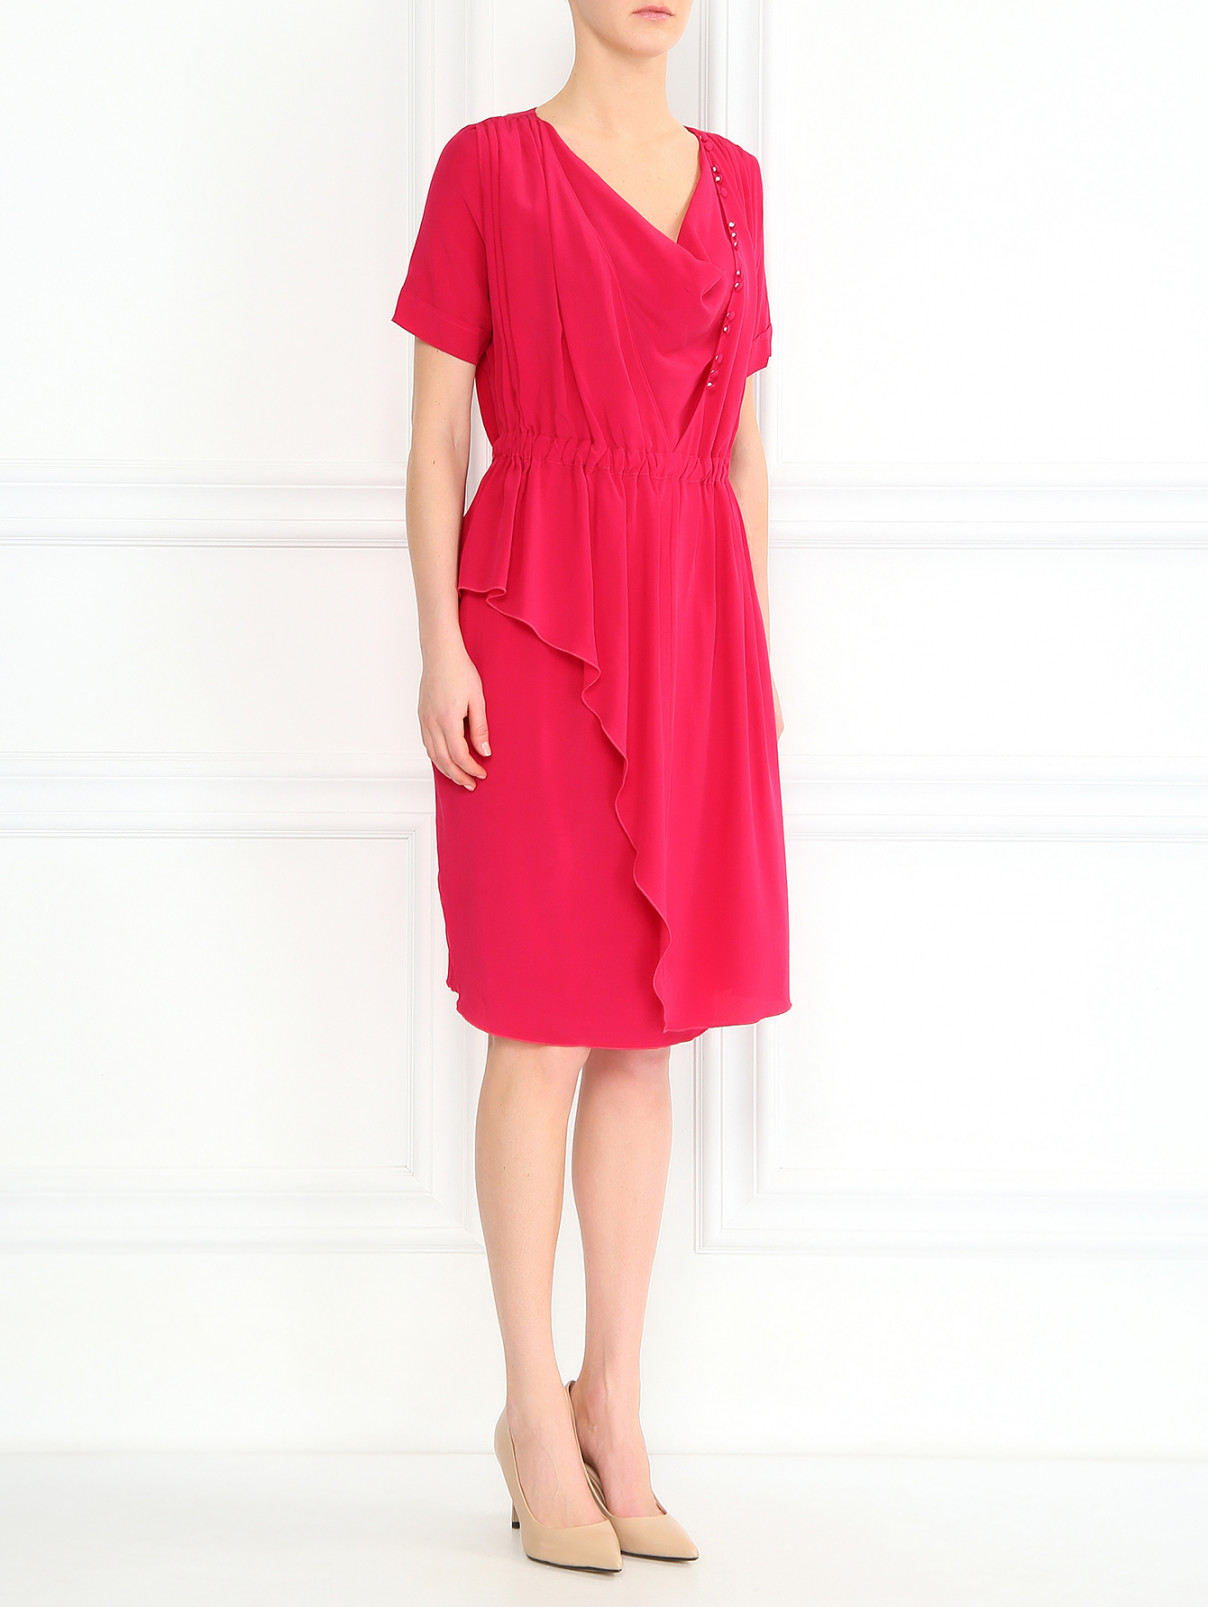 Шелковое платье с драпировкой Antonio Marras  –  Модель Общий вид  – Цвет:  Красный